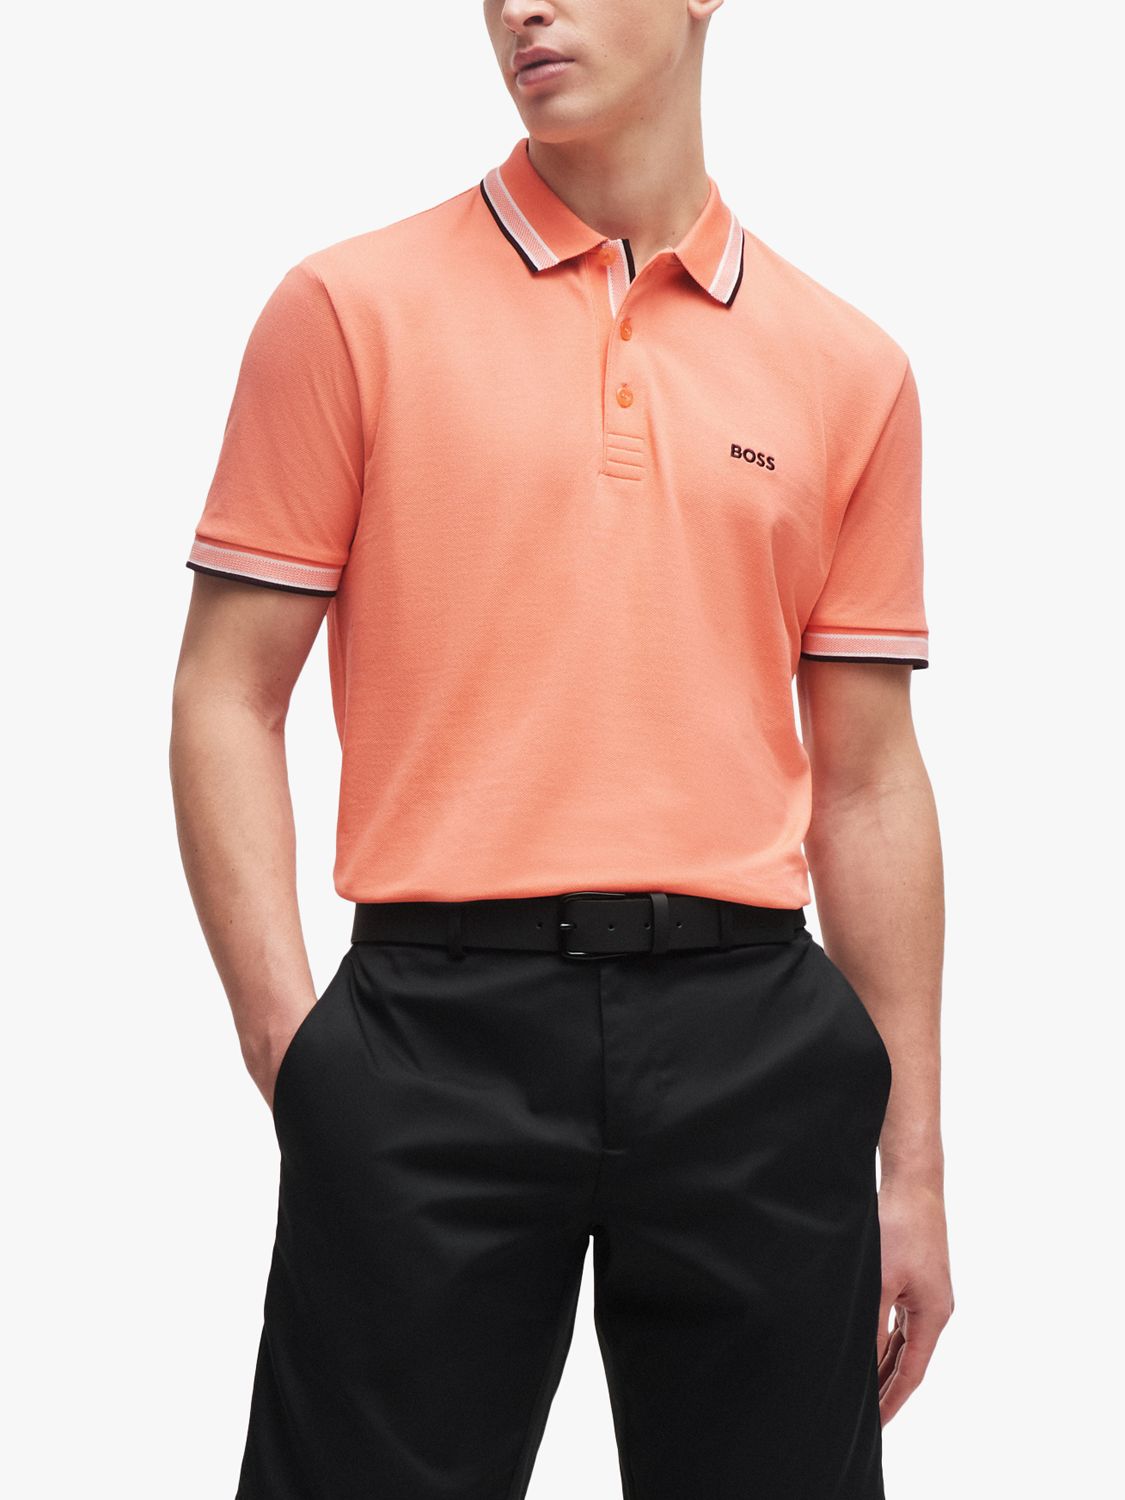 BOSS Essentials Short Sleeve Polo Shirt, Open Red, XL